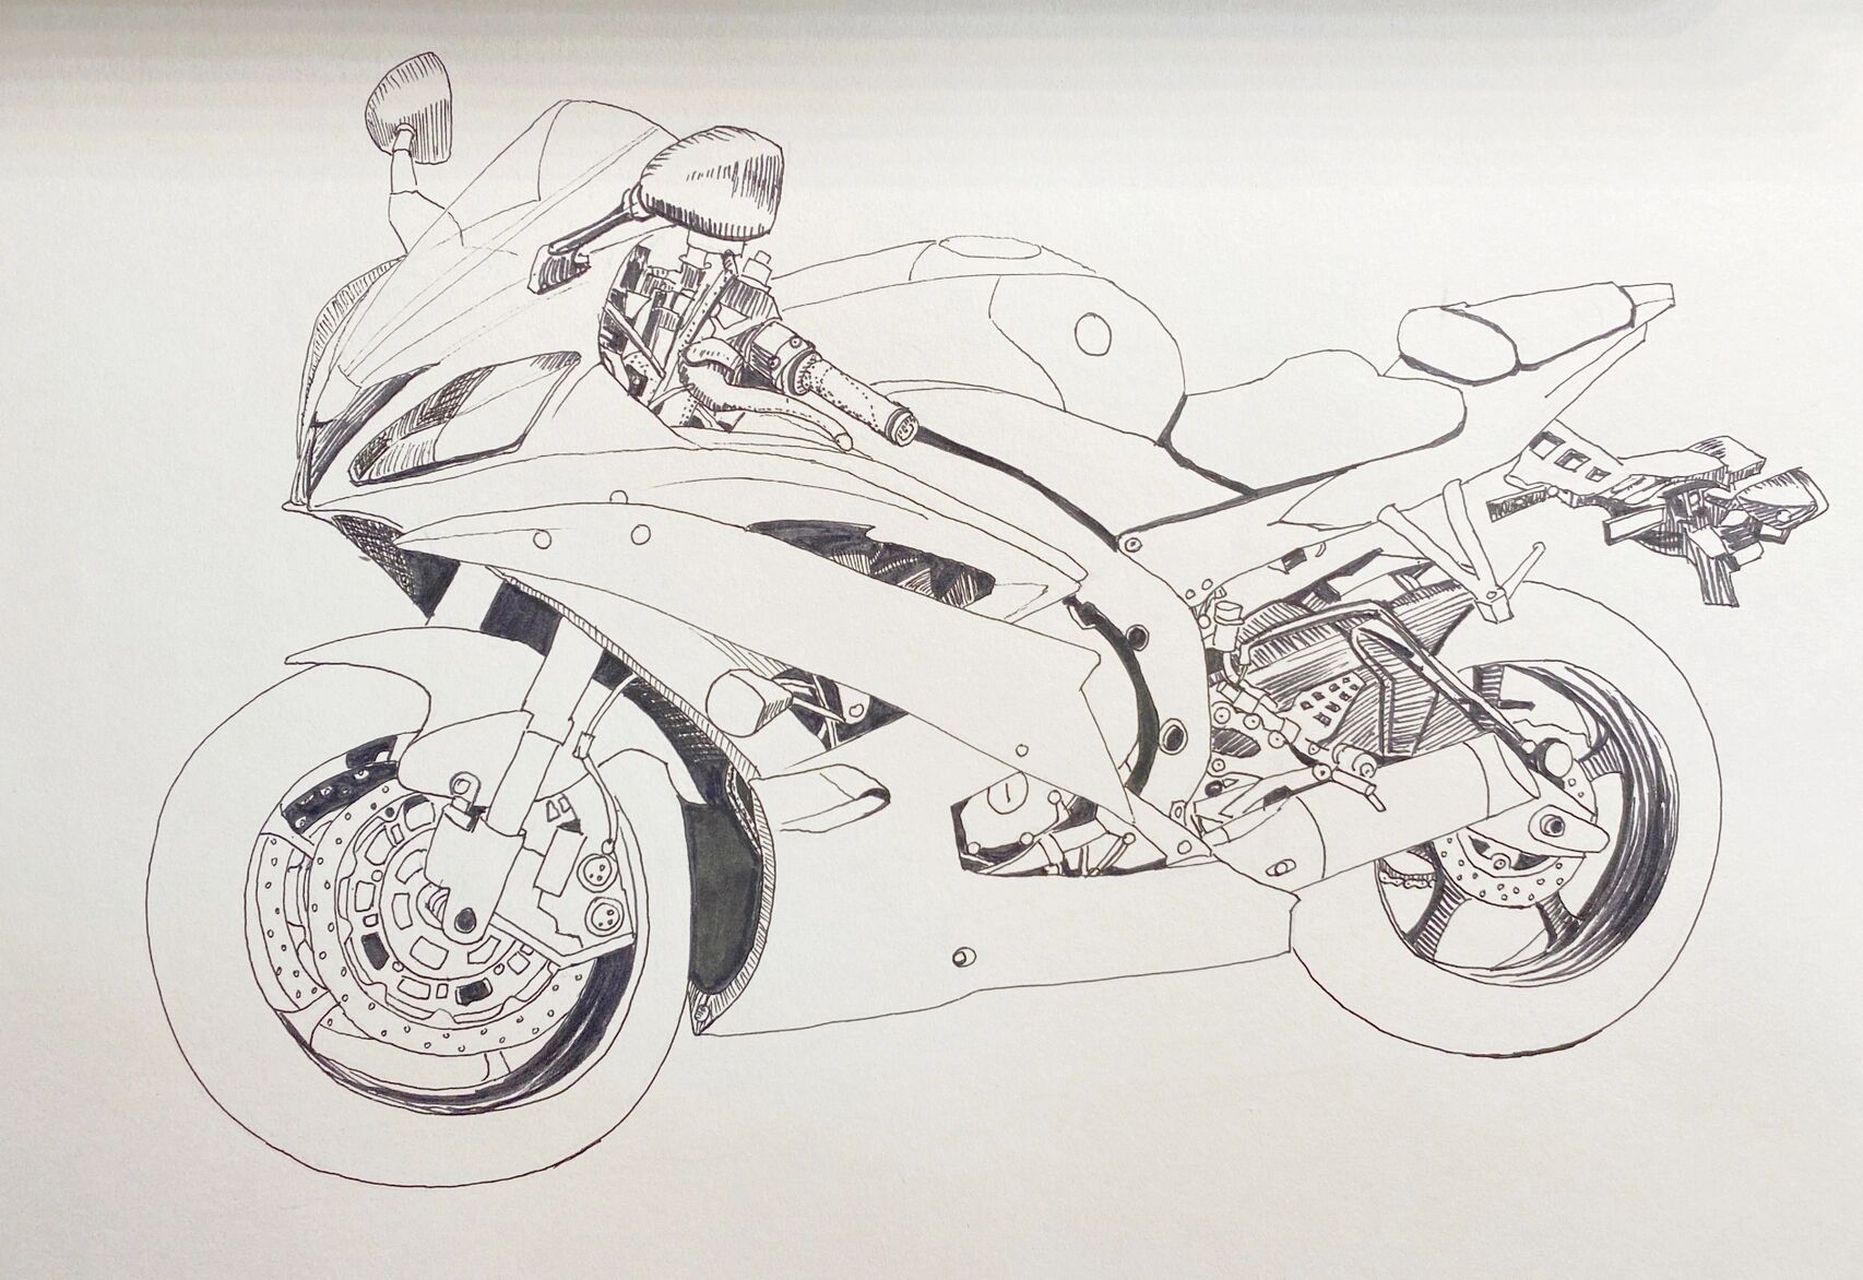 摩托车写生线描 摩托车写生线描步骤: 1,图片准备 先找一些高清的摩托